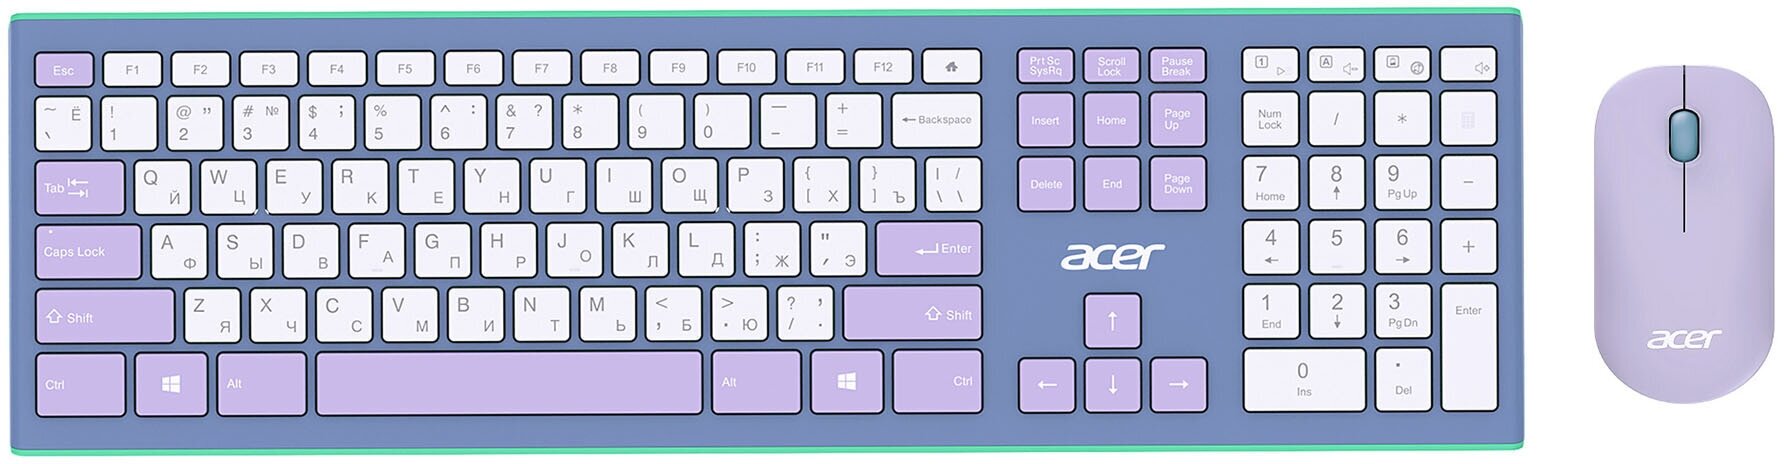 Клавиатура + мышь Acer OCC200 клав:зелёный/фиолетовый мышь:зелёный/фиолетовый USB беспроводная slim Multimedia